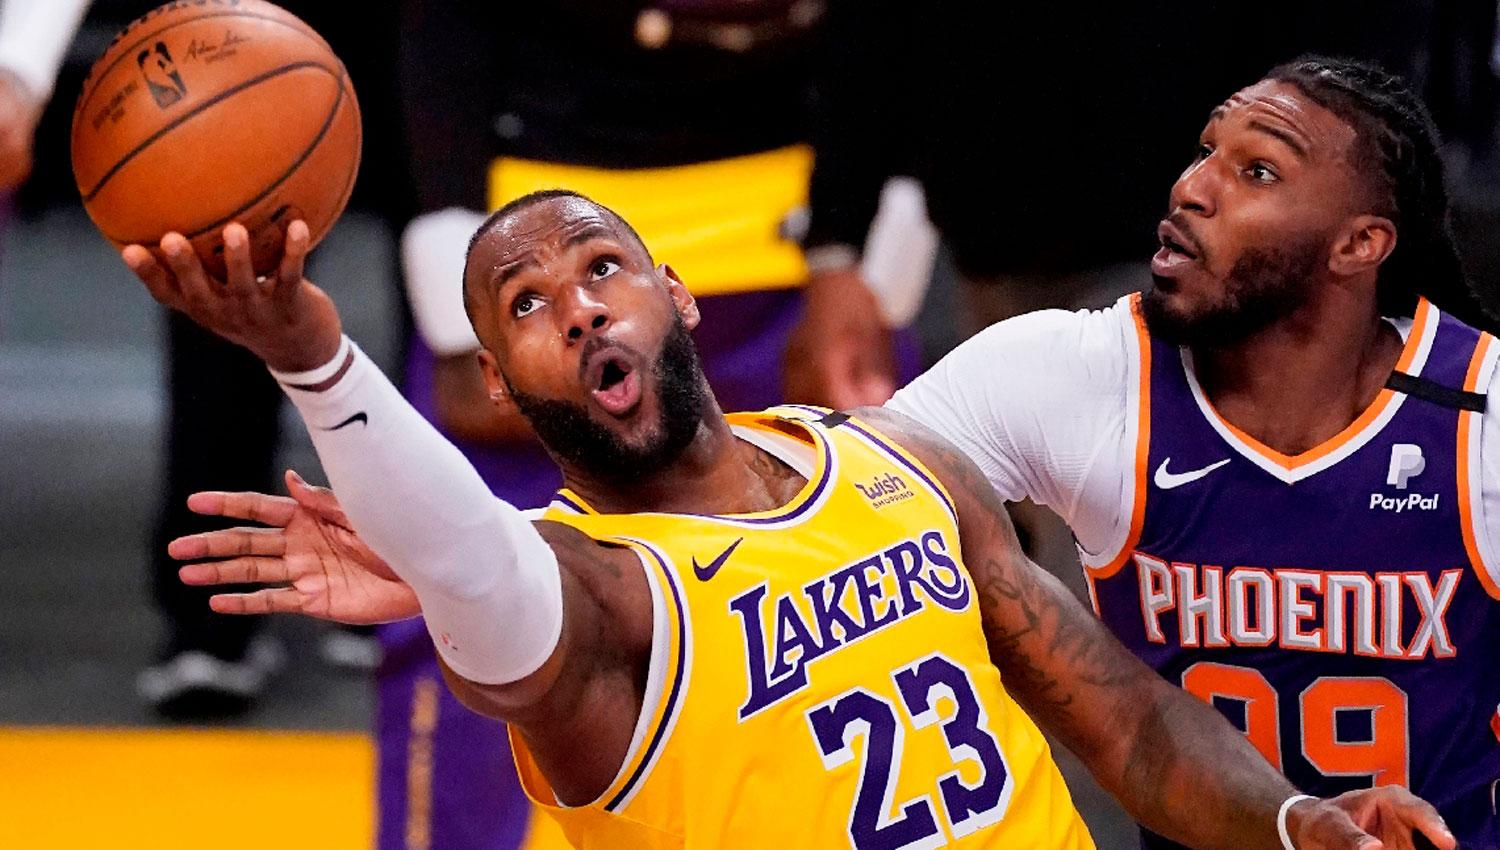 LA ESTRELLA. LeBron James liderará unos Lakers que arrancan como candidatos a pelear el campeonato.